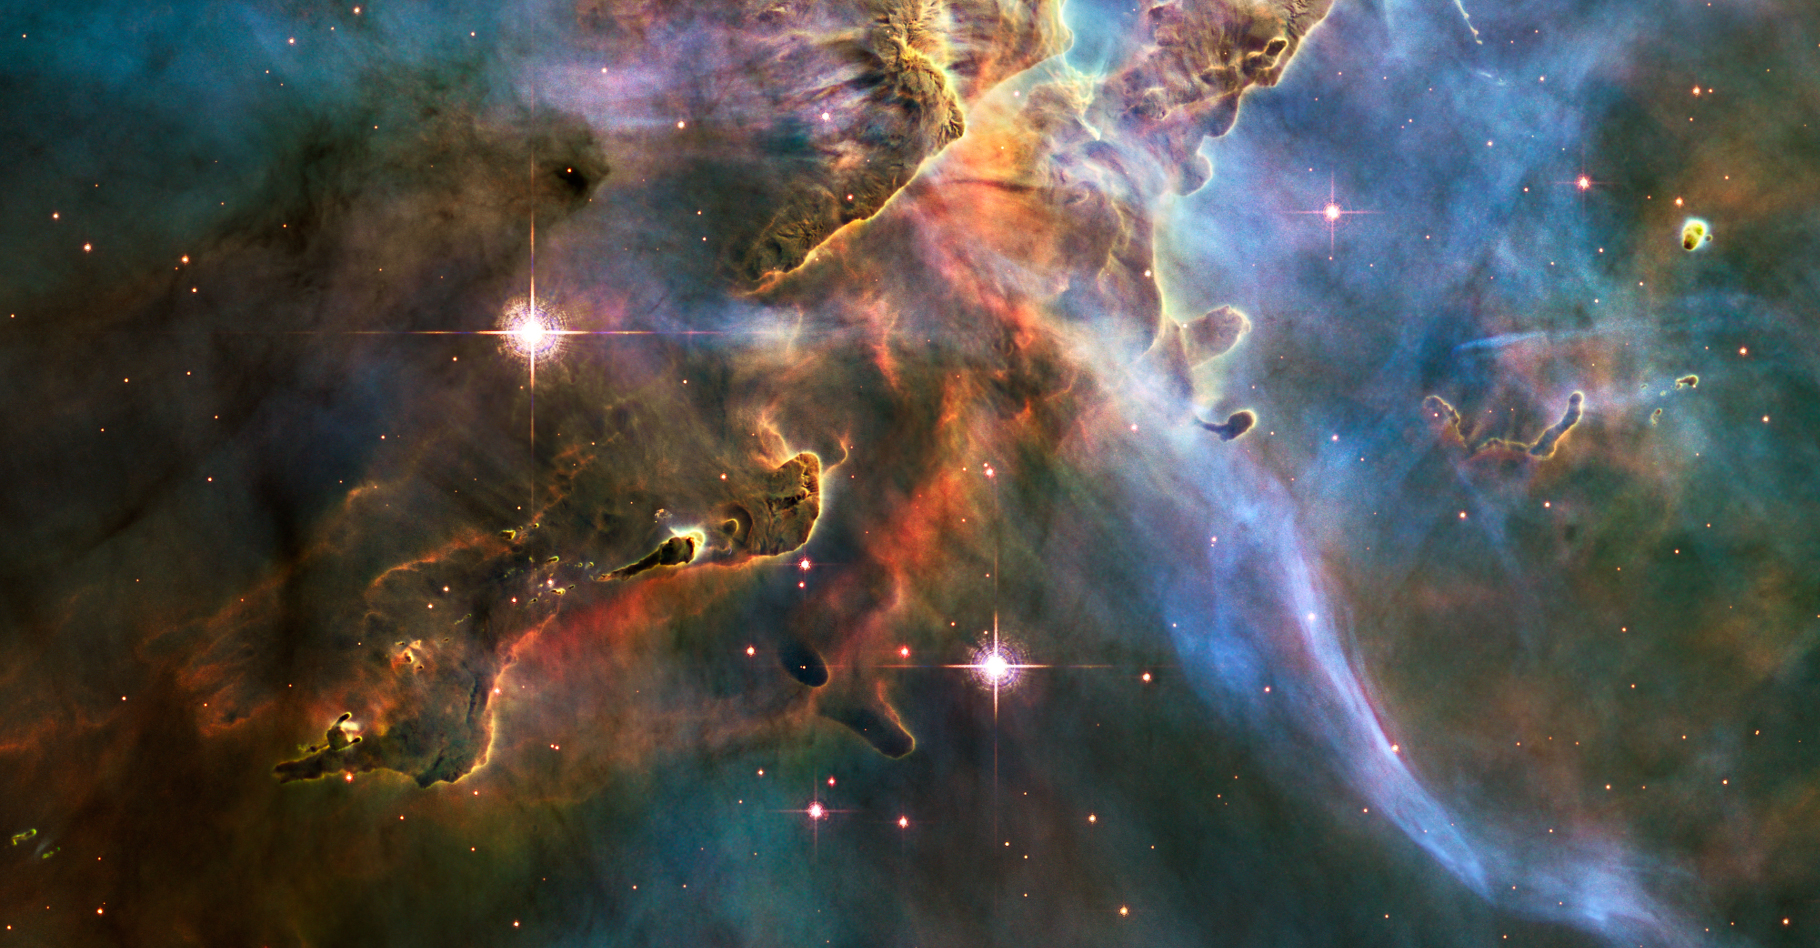 De brillantes étoiles dans la nébuleuse de la Carène. Cette dernière se trouve à une distance estimée entre 6.500 et 10.000 années-lumière, dans la constellation du même nom. © Hubble Space Telescope